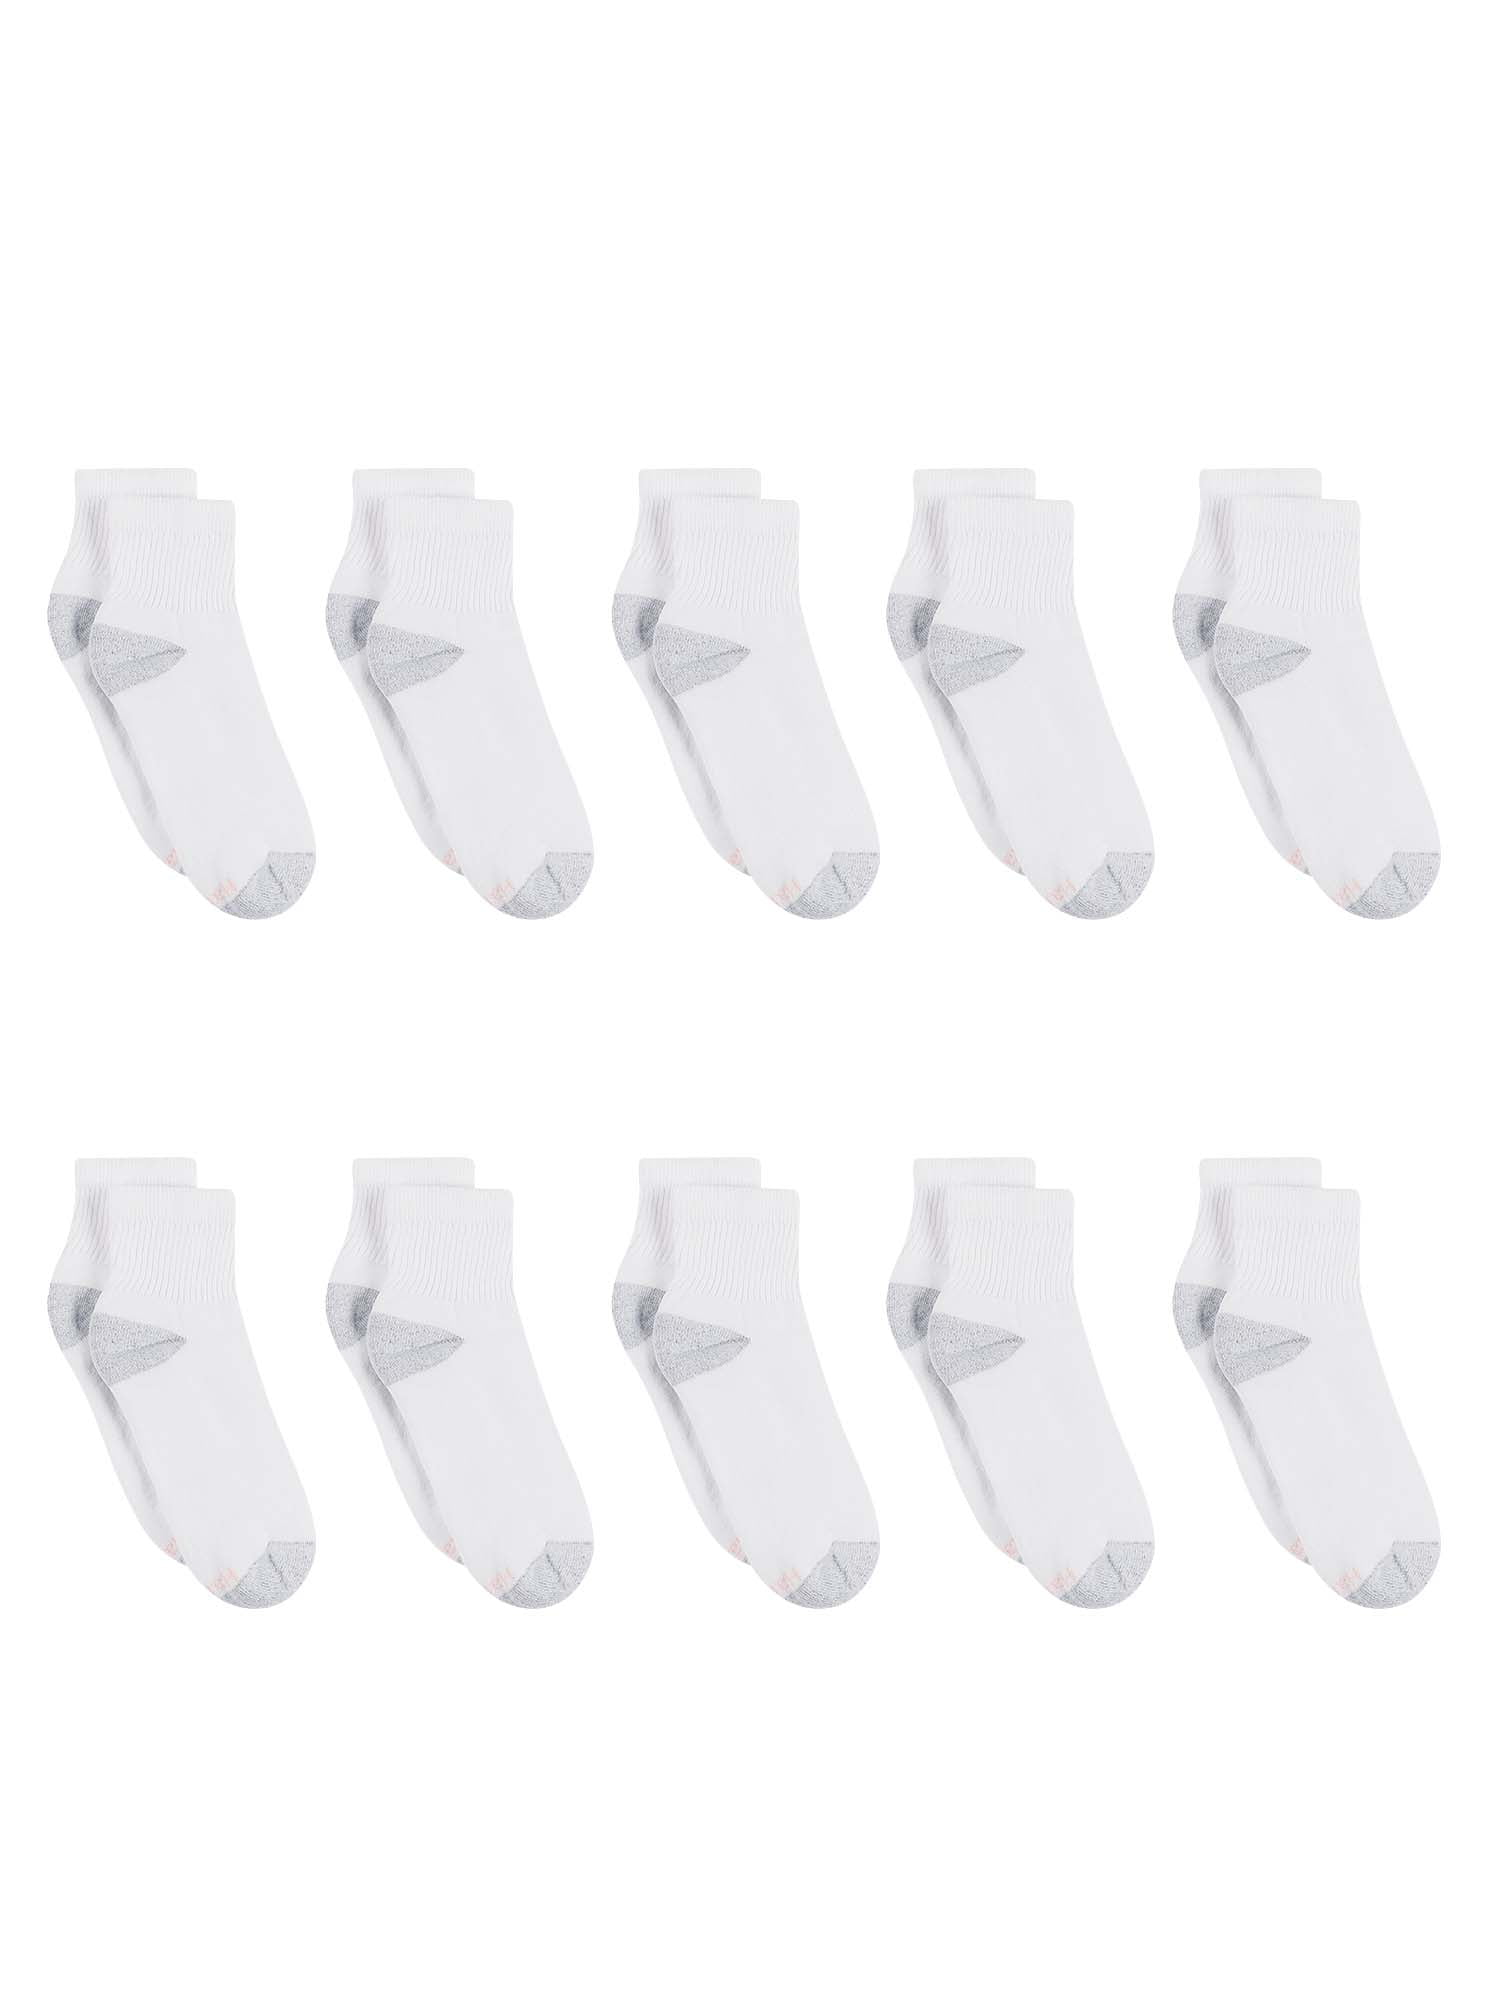 Hanes Women's Cushion Comfort Ankle Socks 10-Pack